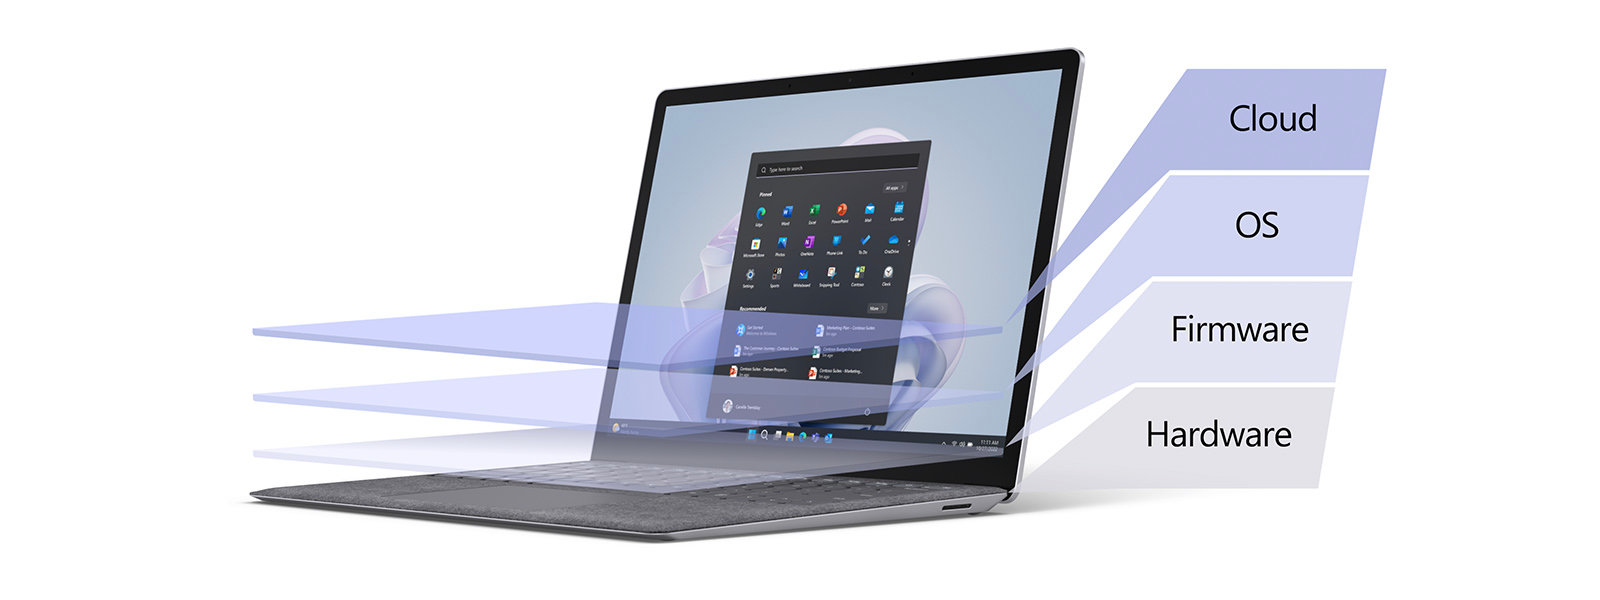 Ein Surface Laptop überlagert mit einem Farbverlauf, der verschiedene Sicherheitsebenen darstellt